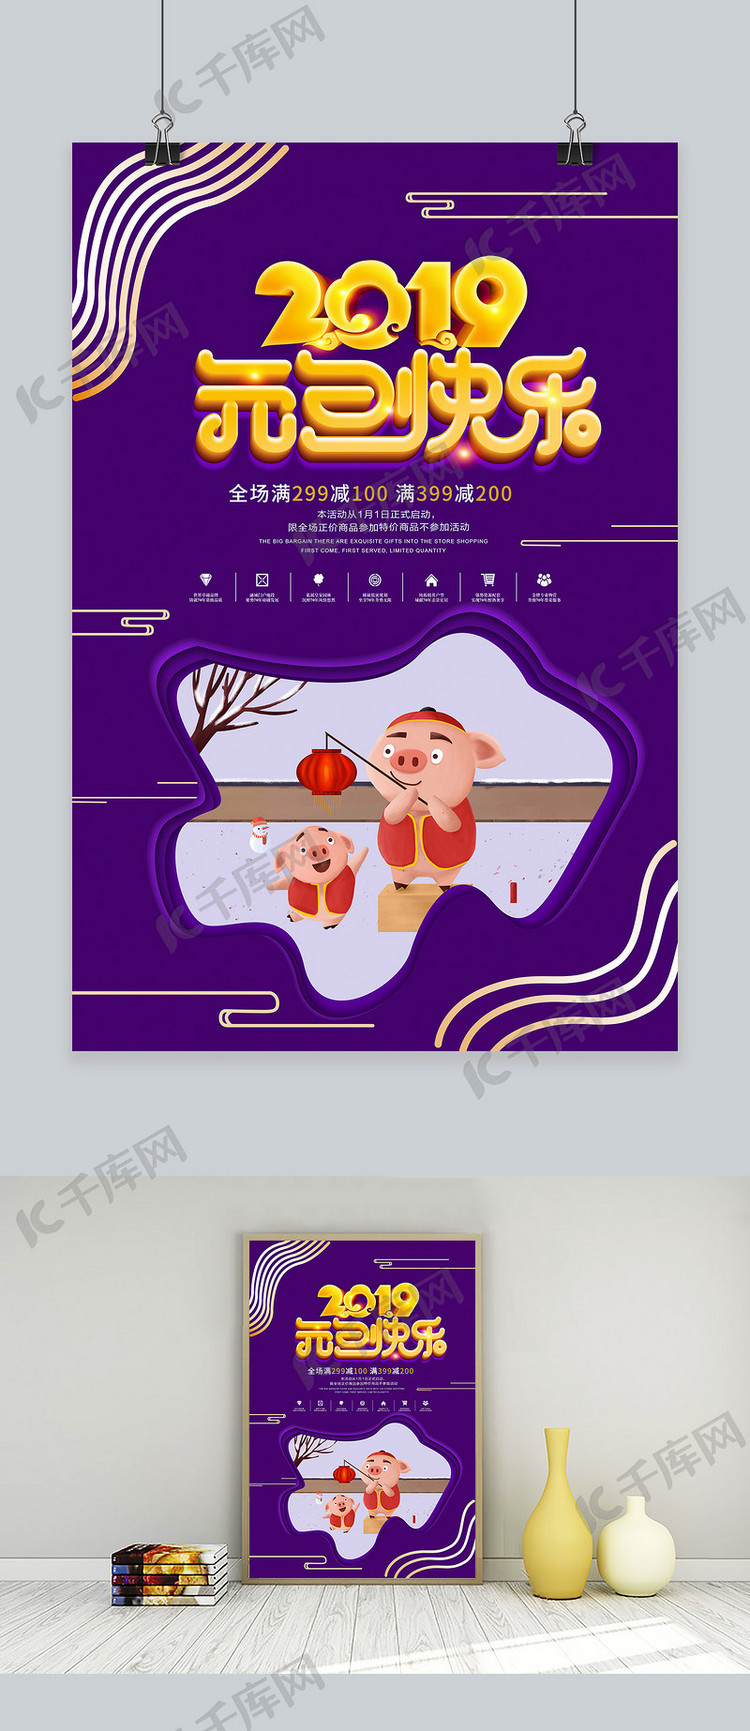 紫色大气2019元旦快乐立体字海报